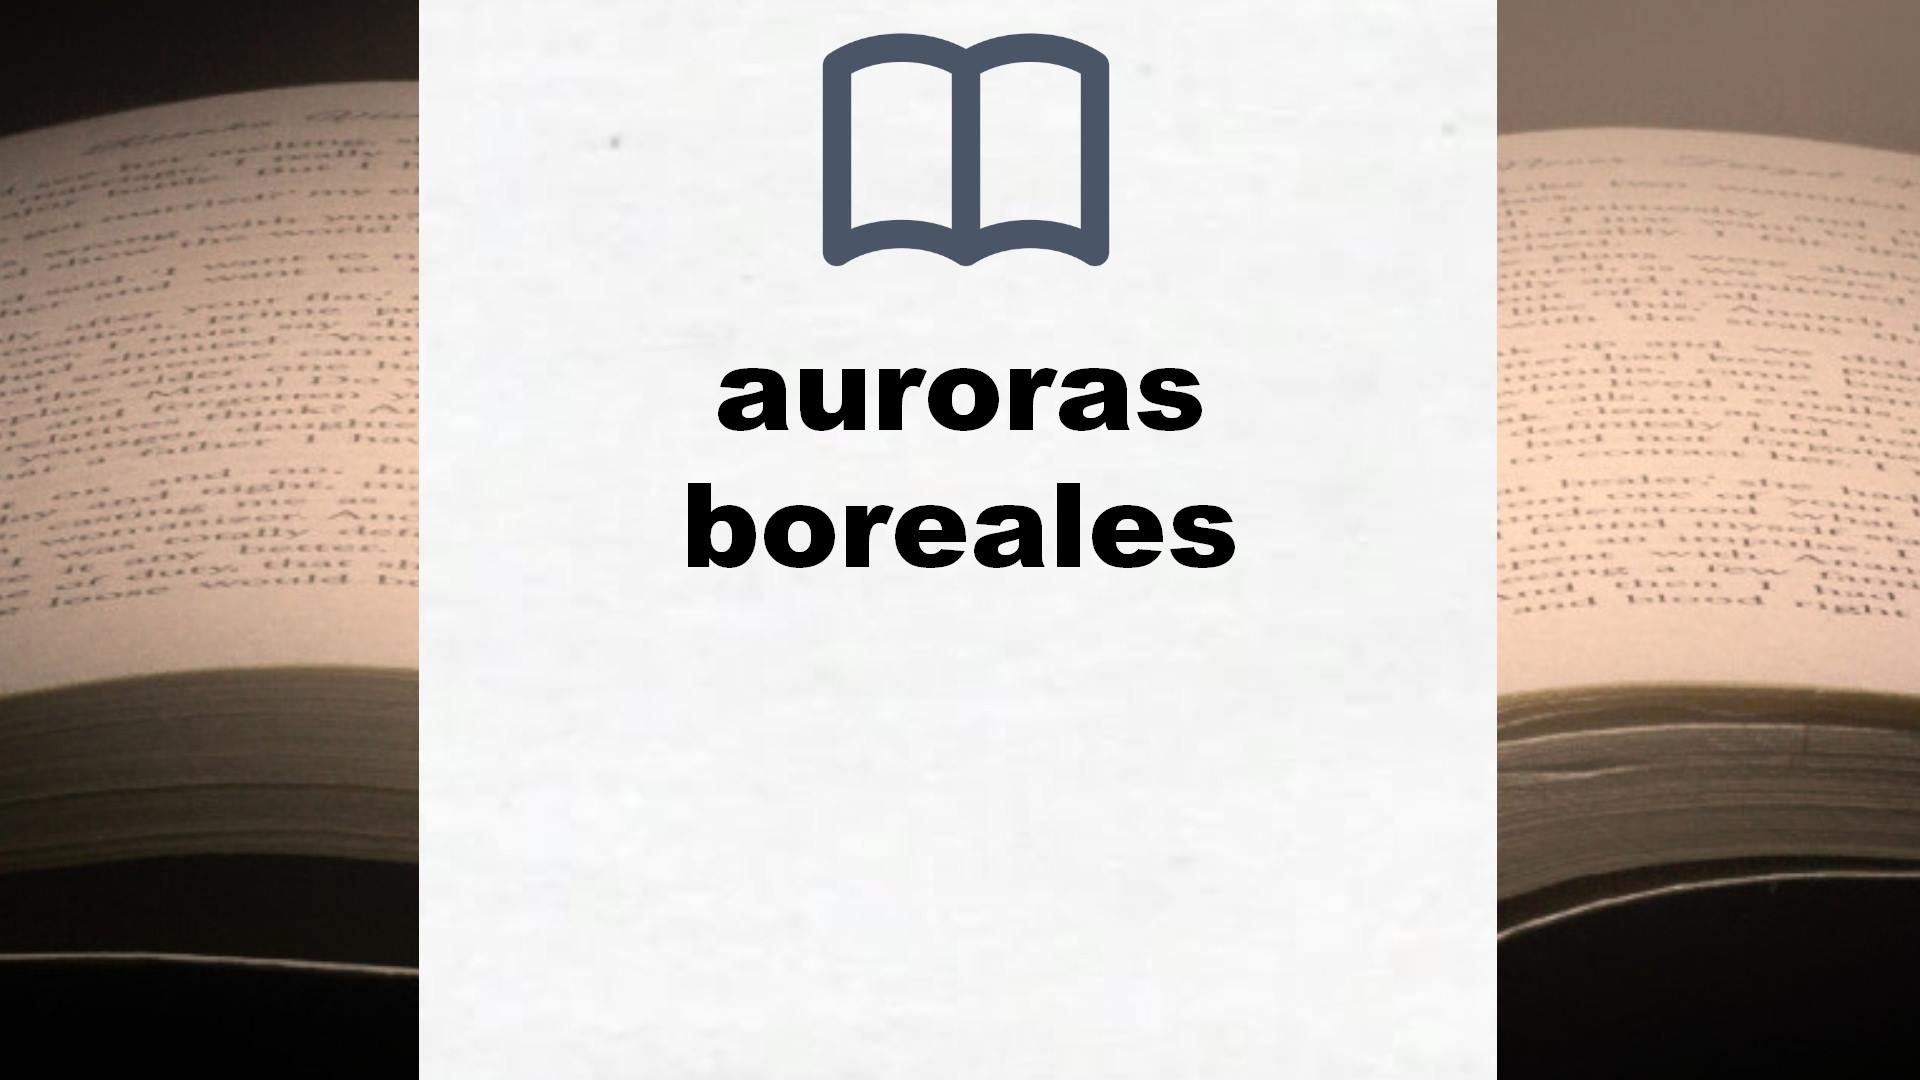 Libros sobre auroras boreales